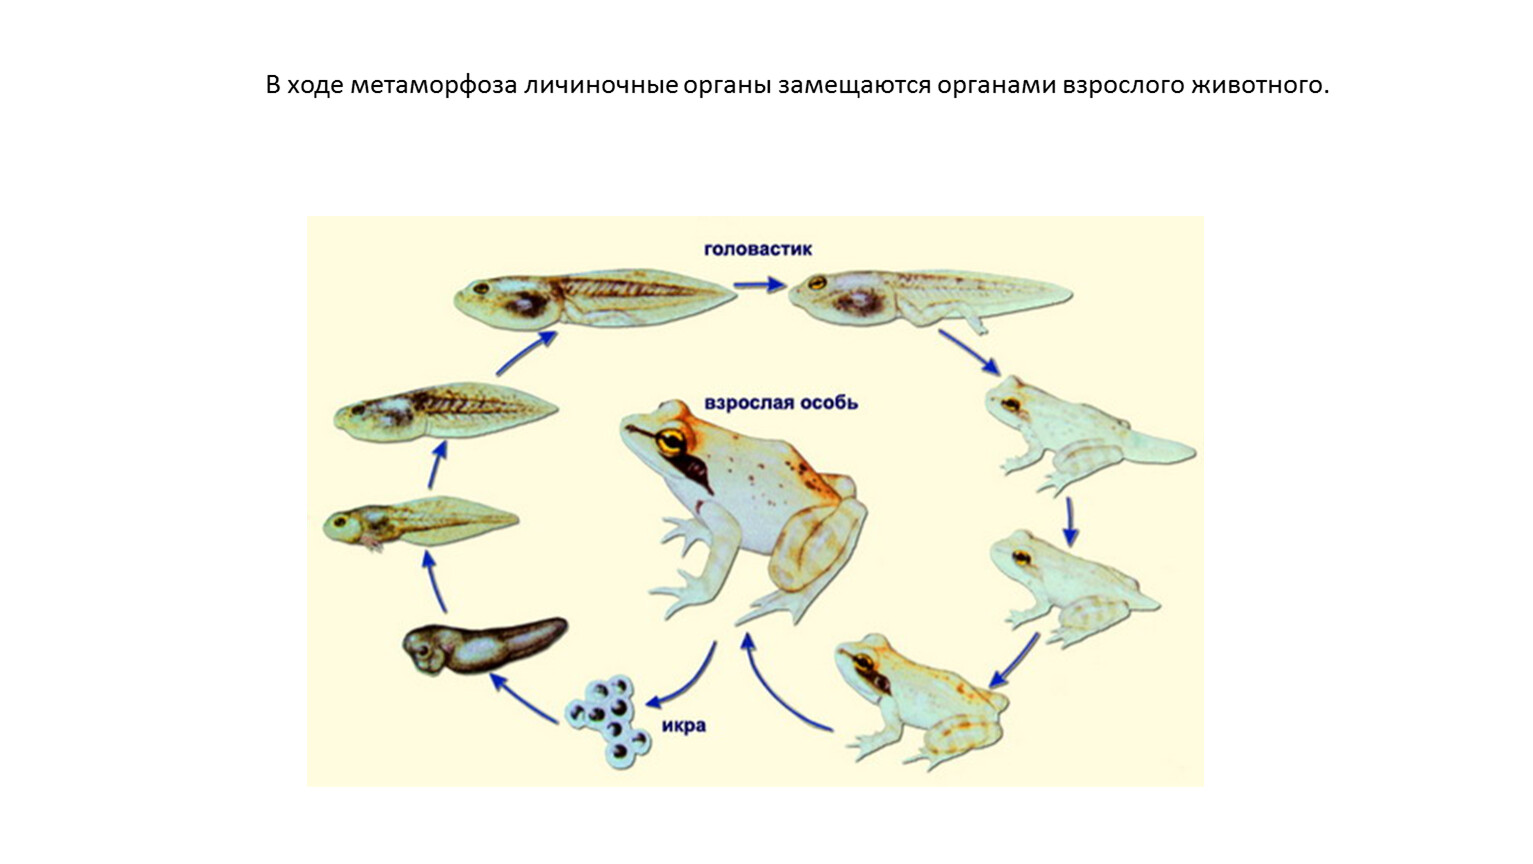 Почему организмы изменяются. Биологическое значение Метаморфоза. Личиночное развитие земноводных разных отрядов. Развитие пингвина с метаморфозом. Качественное изменение организмов в течение жизни это.